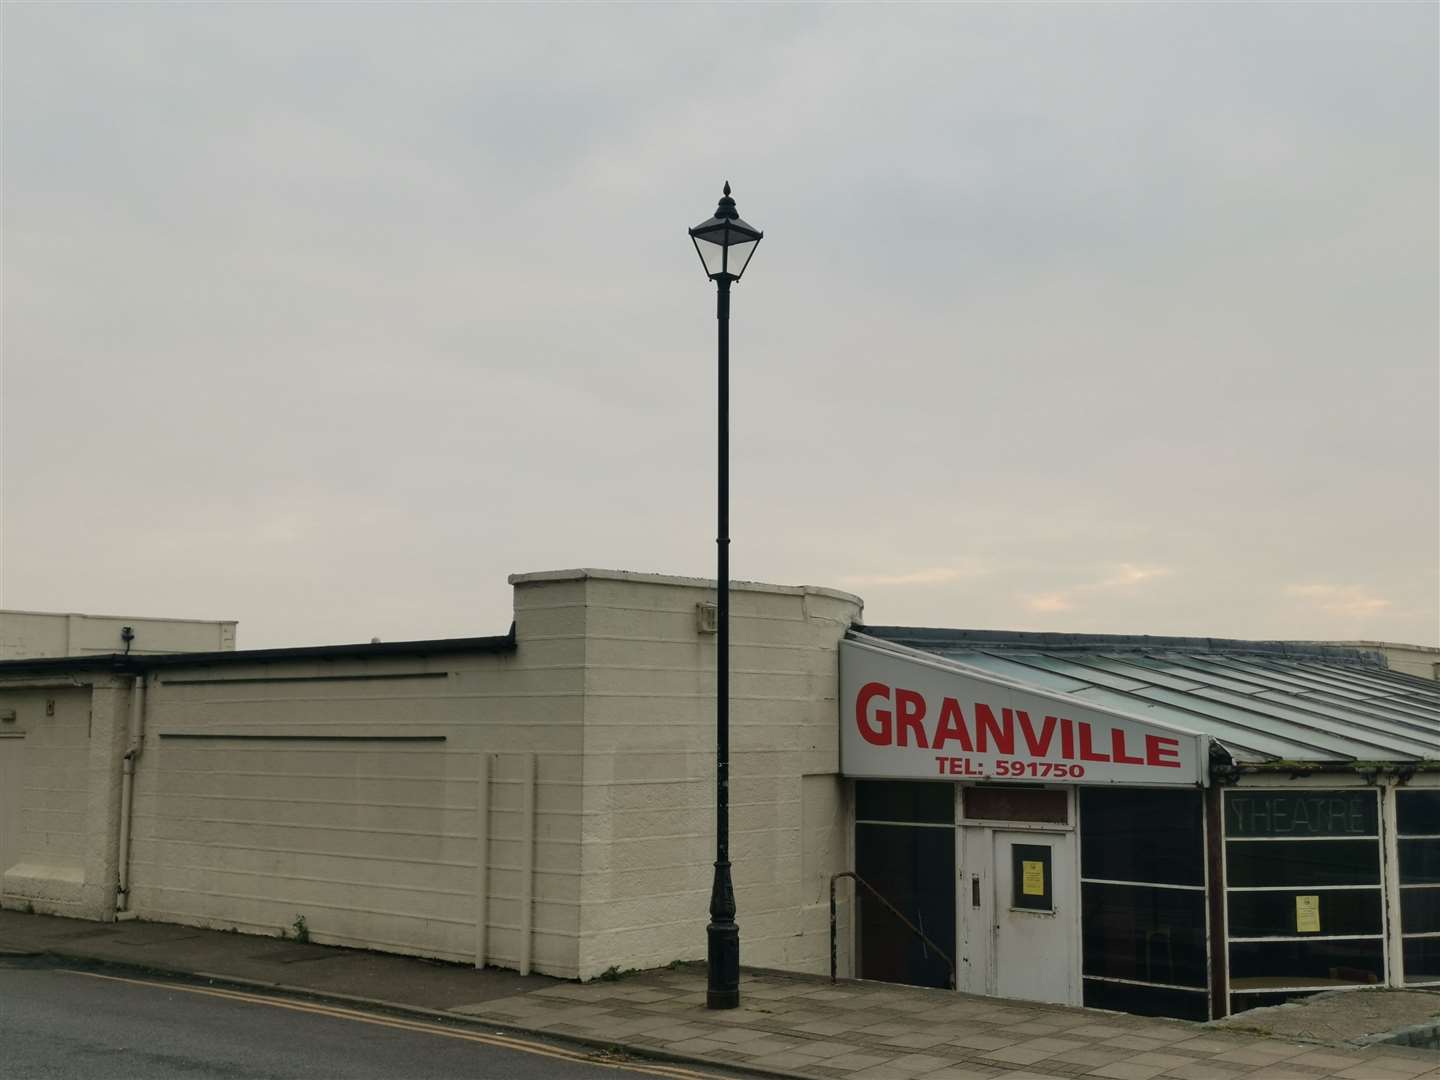 The Granville Theatre in Ramsgate